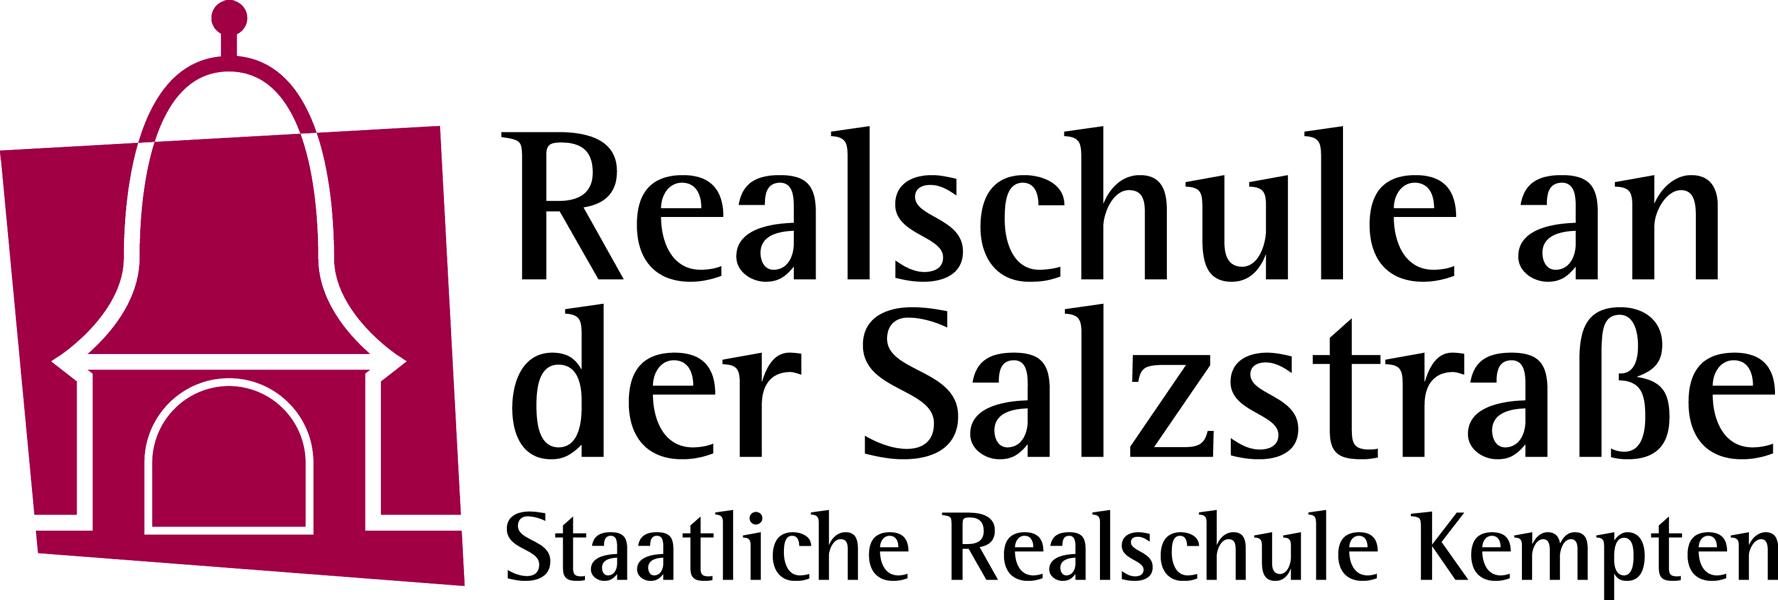 Realschule an der Salzstraße